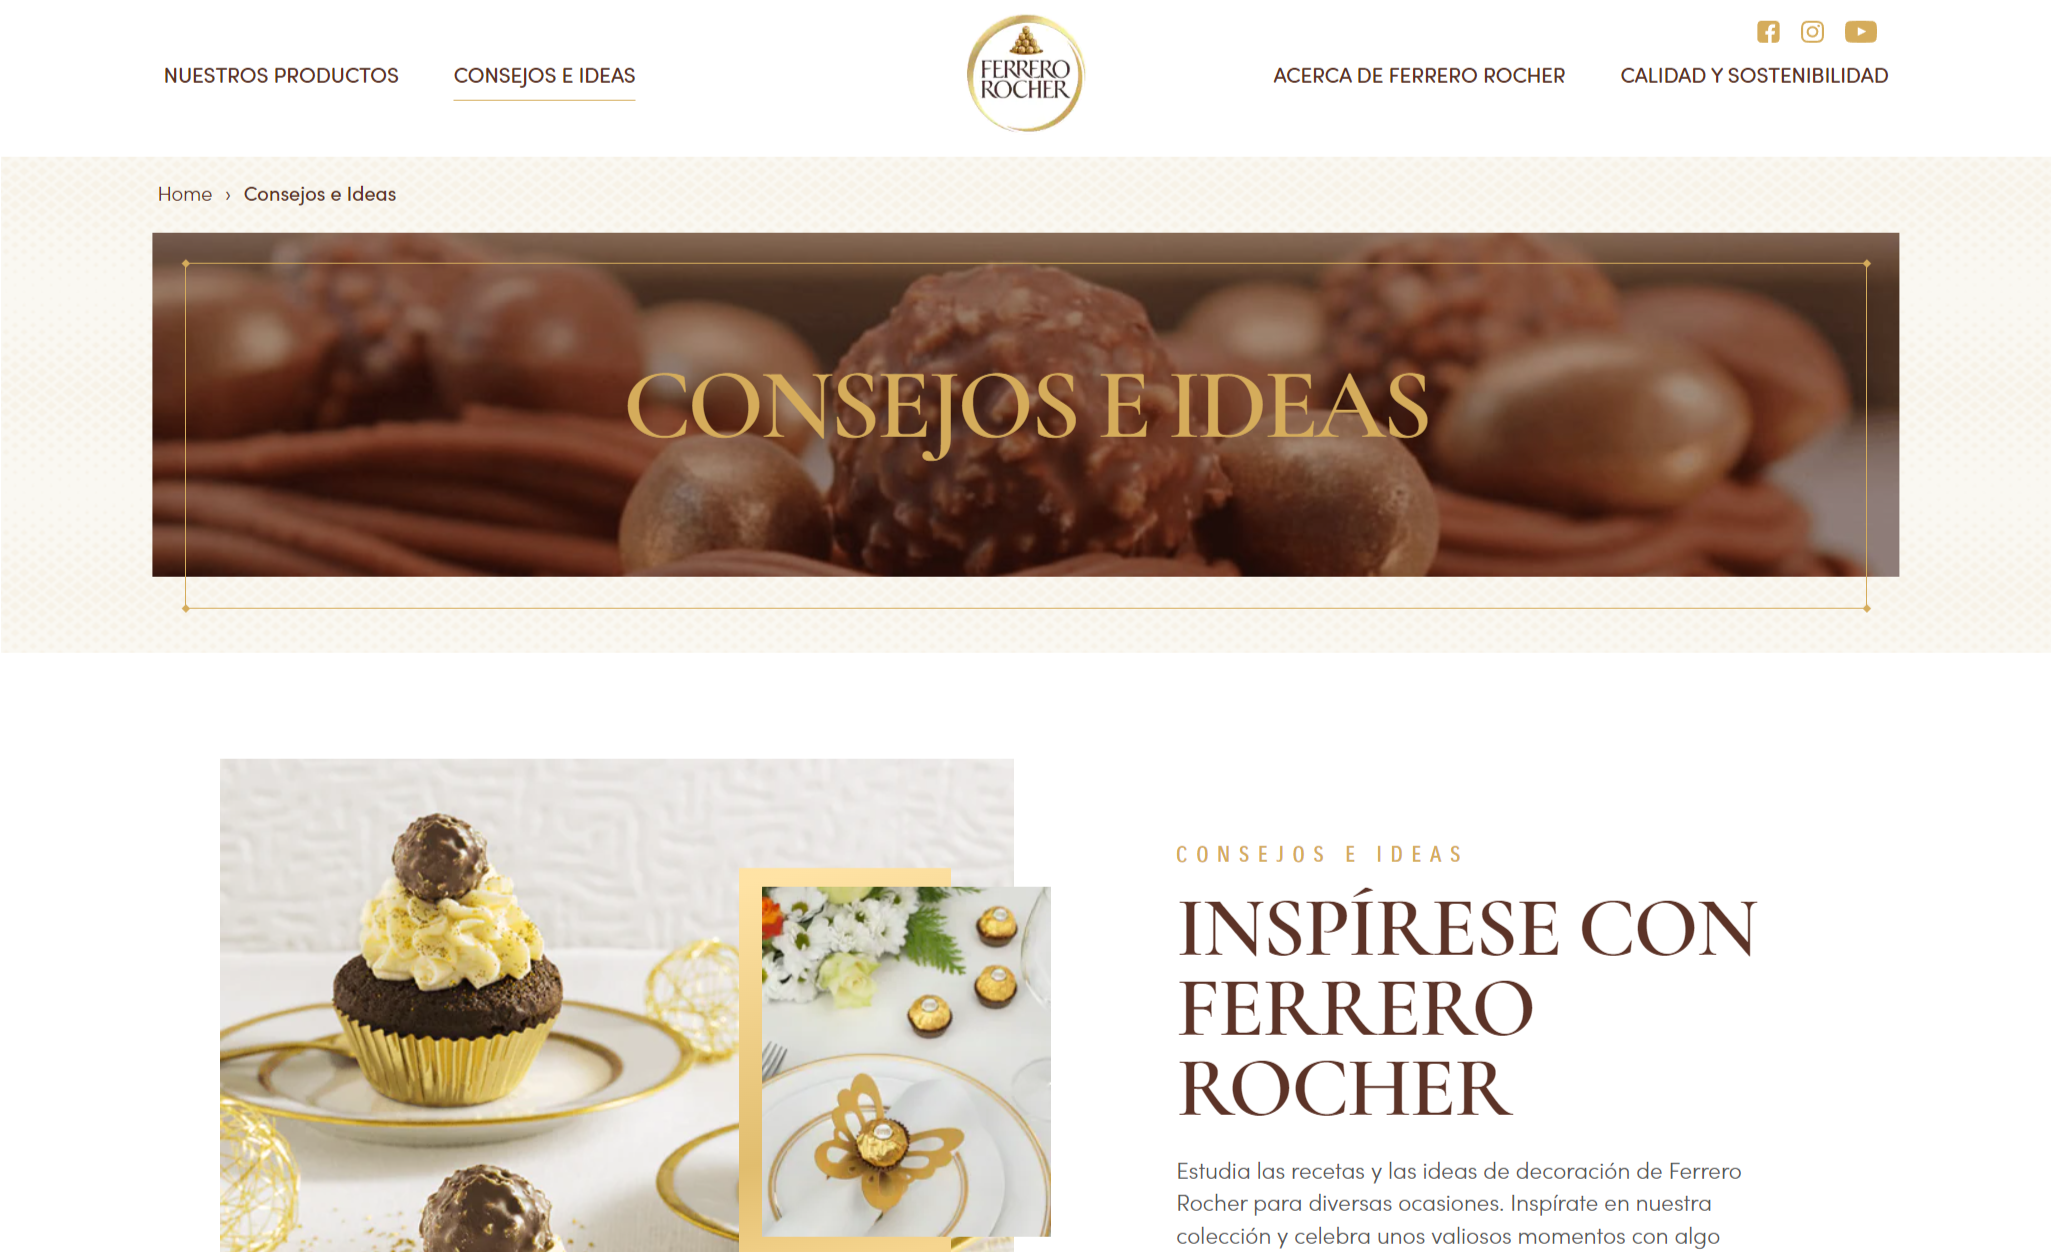 Ejemplo de brand content de Ferrero Rocher